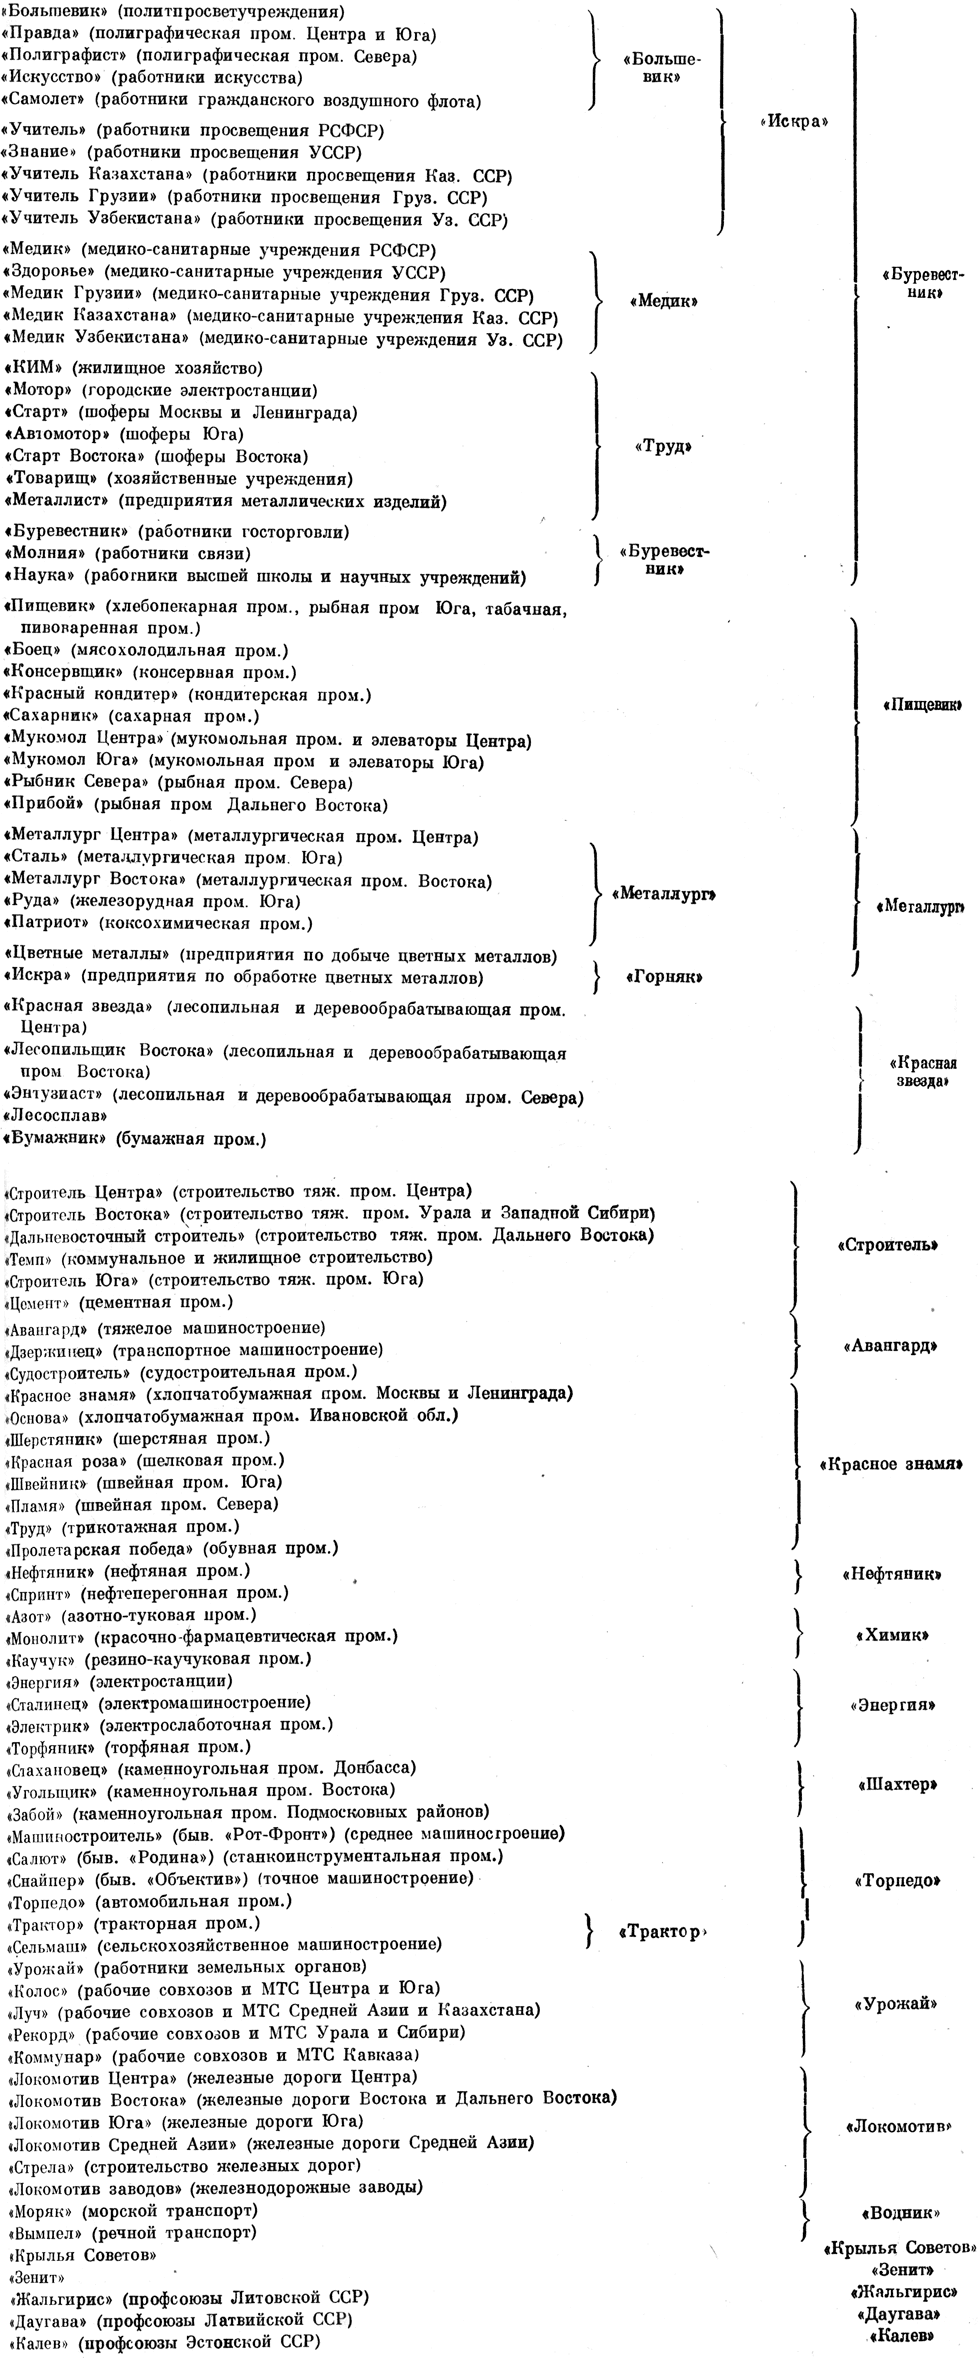 Схема реорганизации ДСО провсоюзов (1938 - 1957)